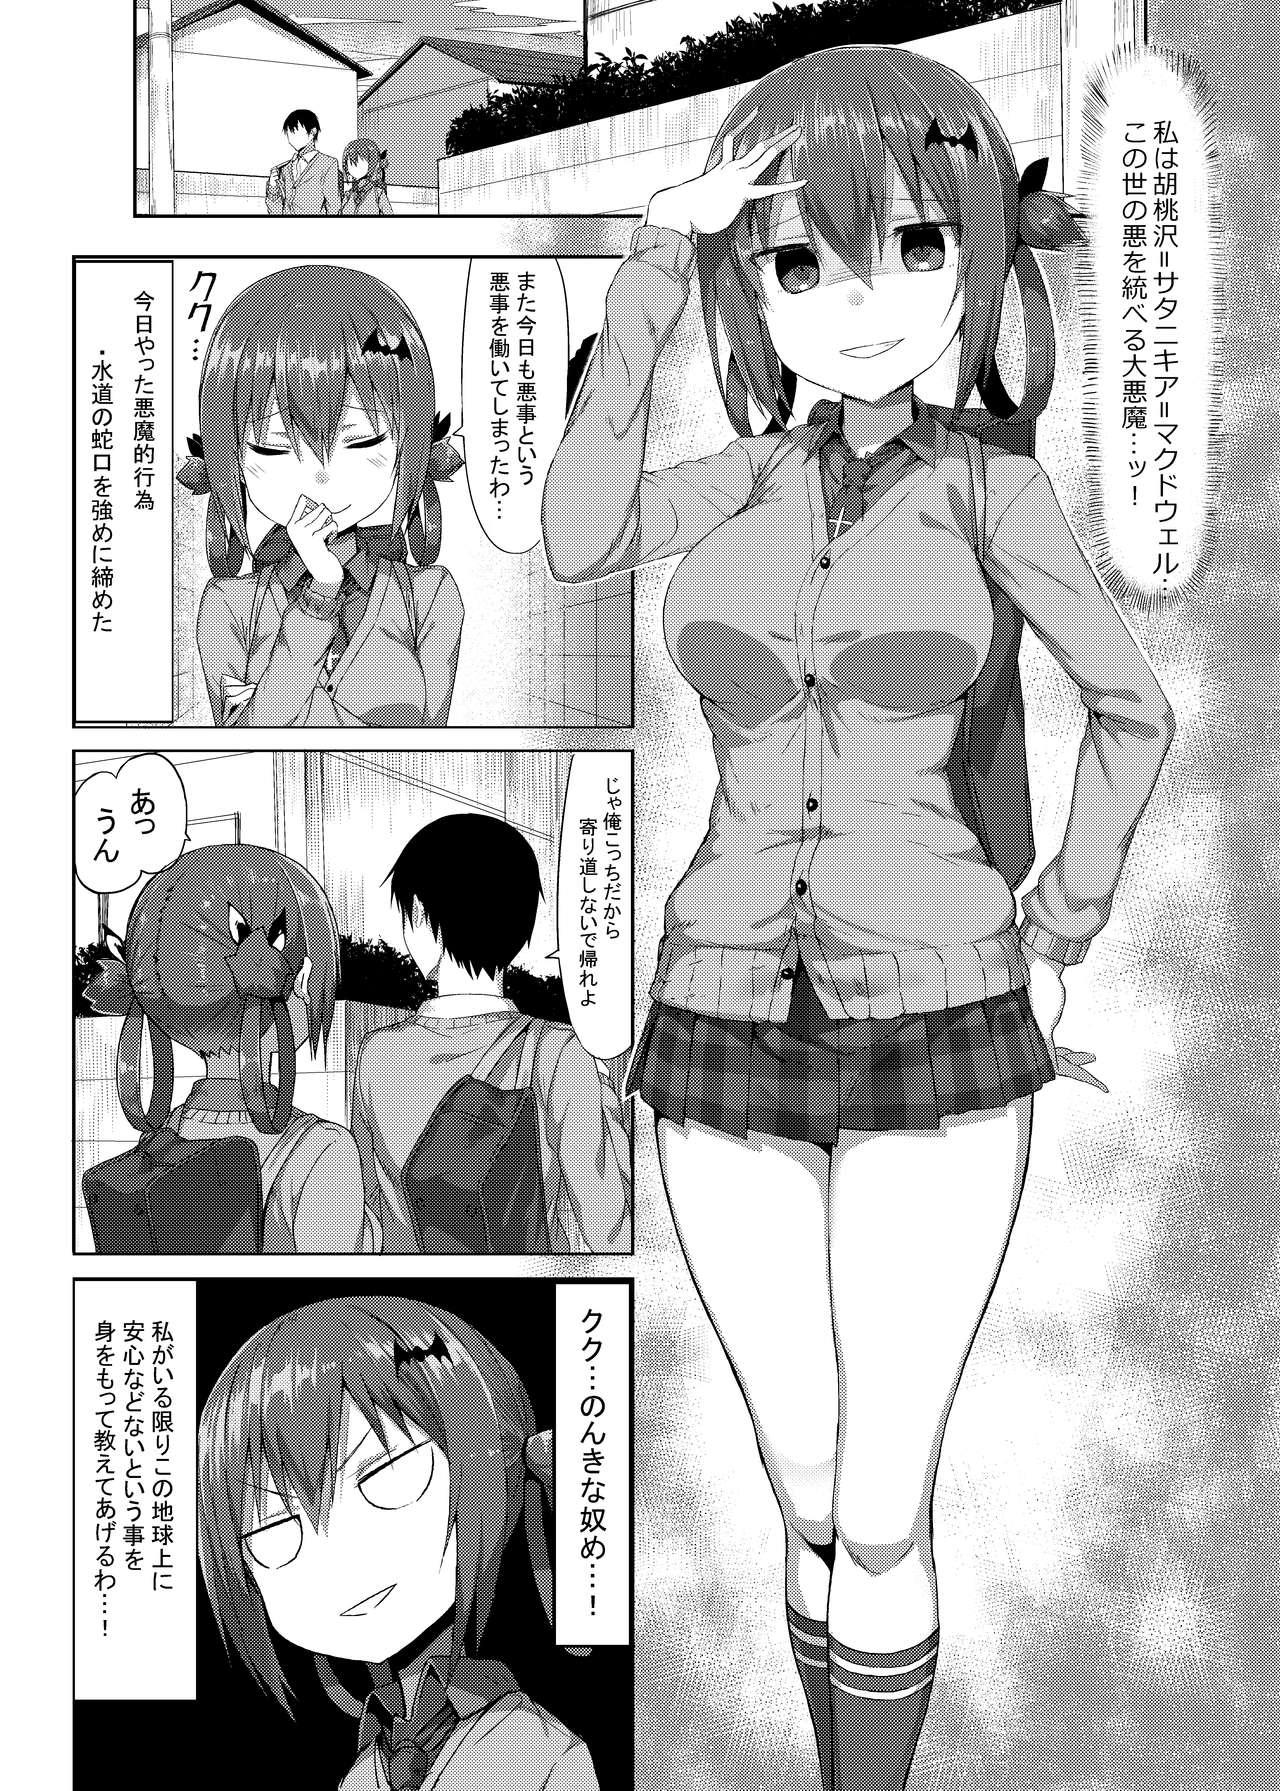 Paja Koisuru Dai Akuma - Gabriel dropout Costume - Page 2